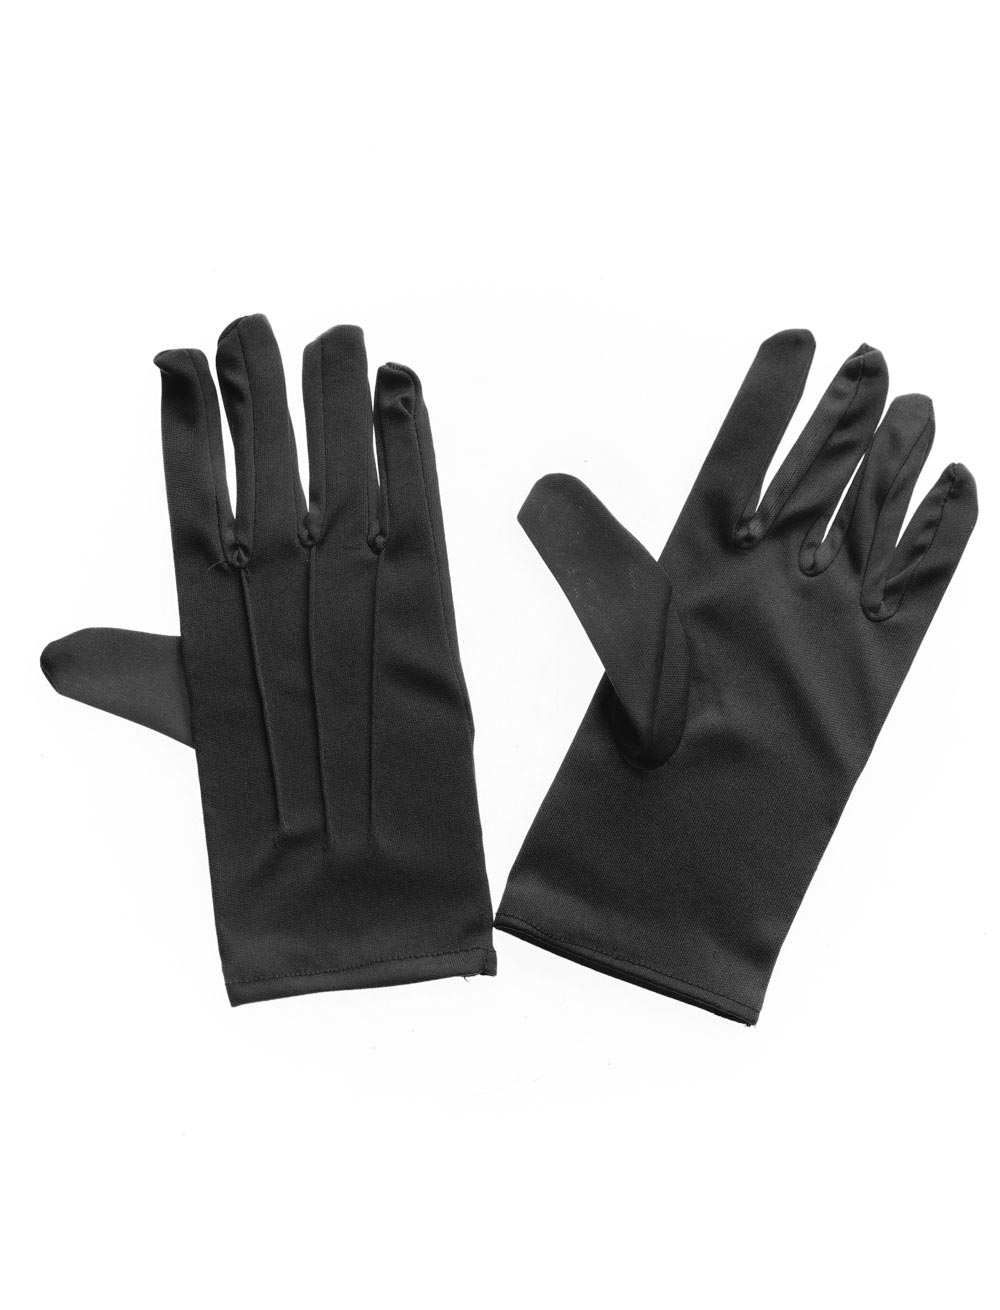 Handschuhe schwarz kurz mit Naht